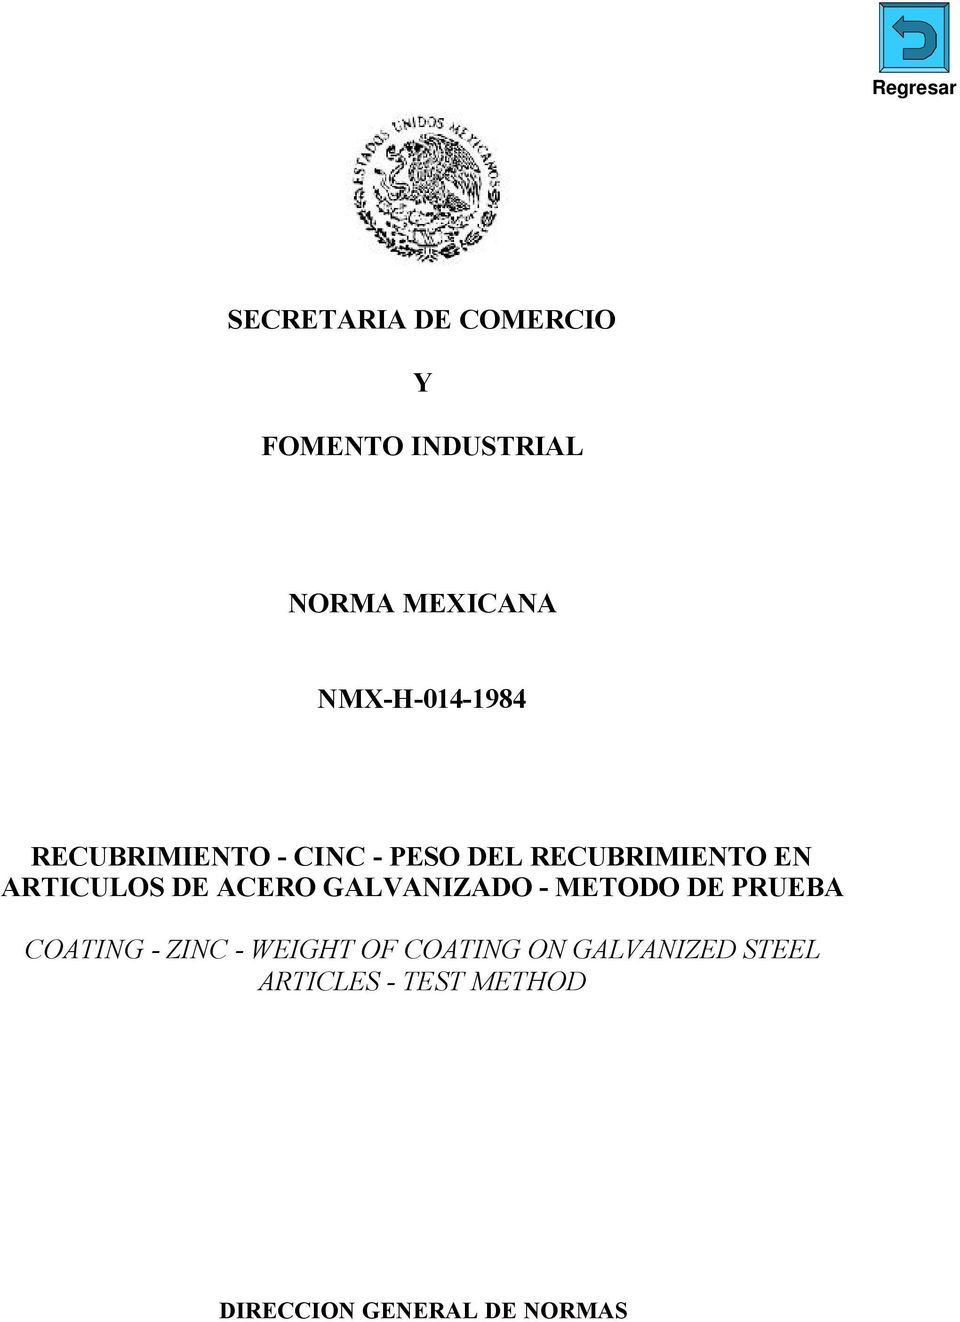 ARTICULOS DE ACERO GALVANIZADO - METODO DE PRUEBA COATING - ZINC -